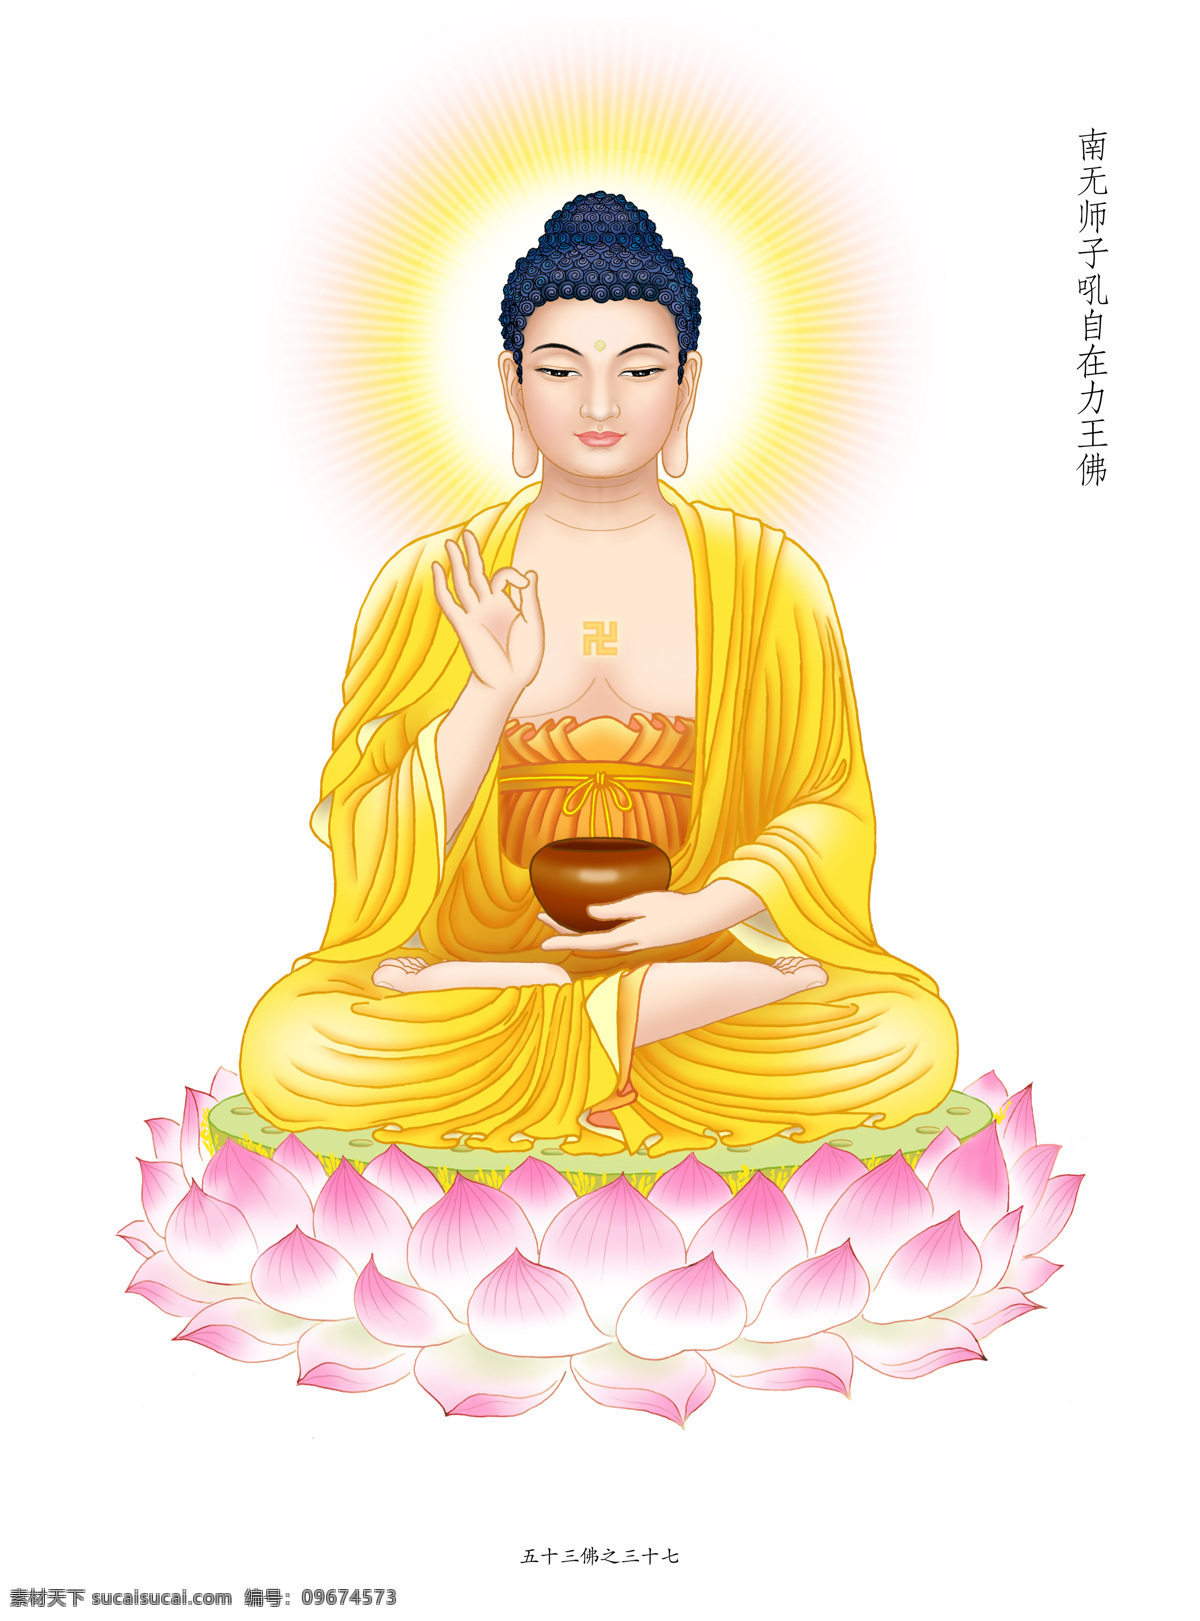 师子 吼 自在 力 王佛 师子吼自在力 佛 佛教 佛画 八十八佛 文化艺术 宗教信仰